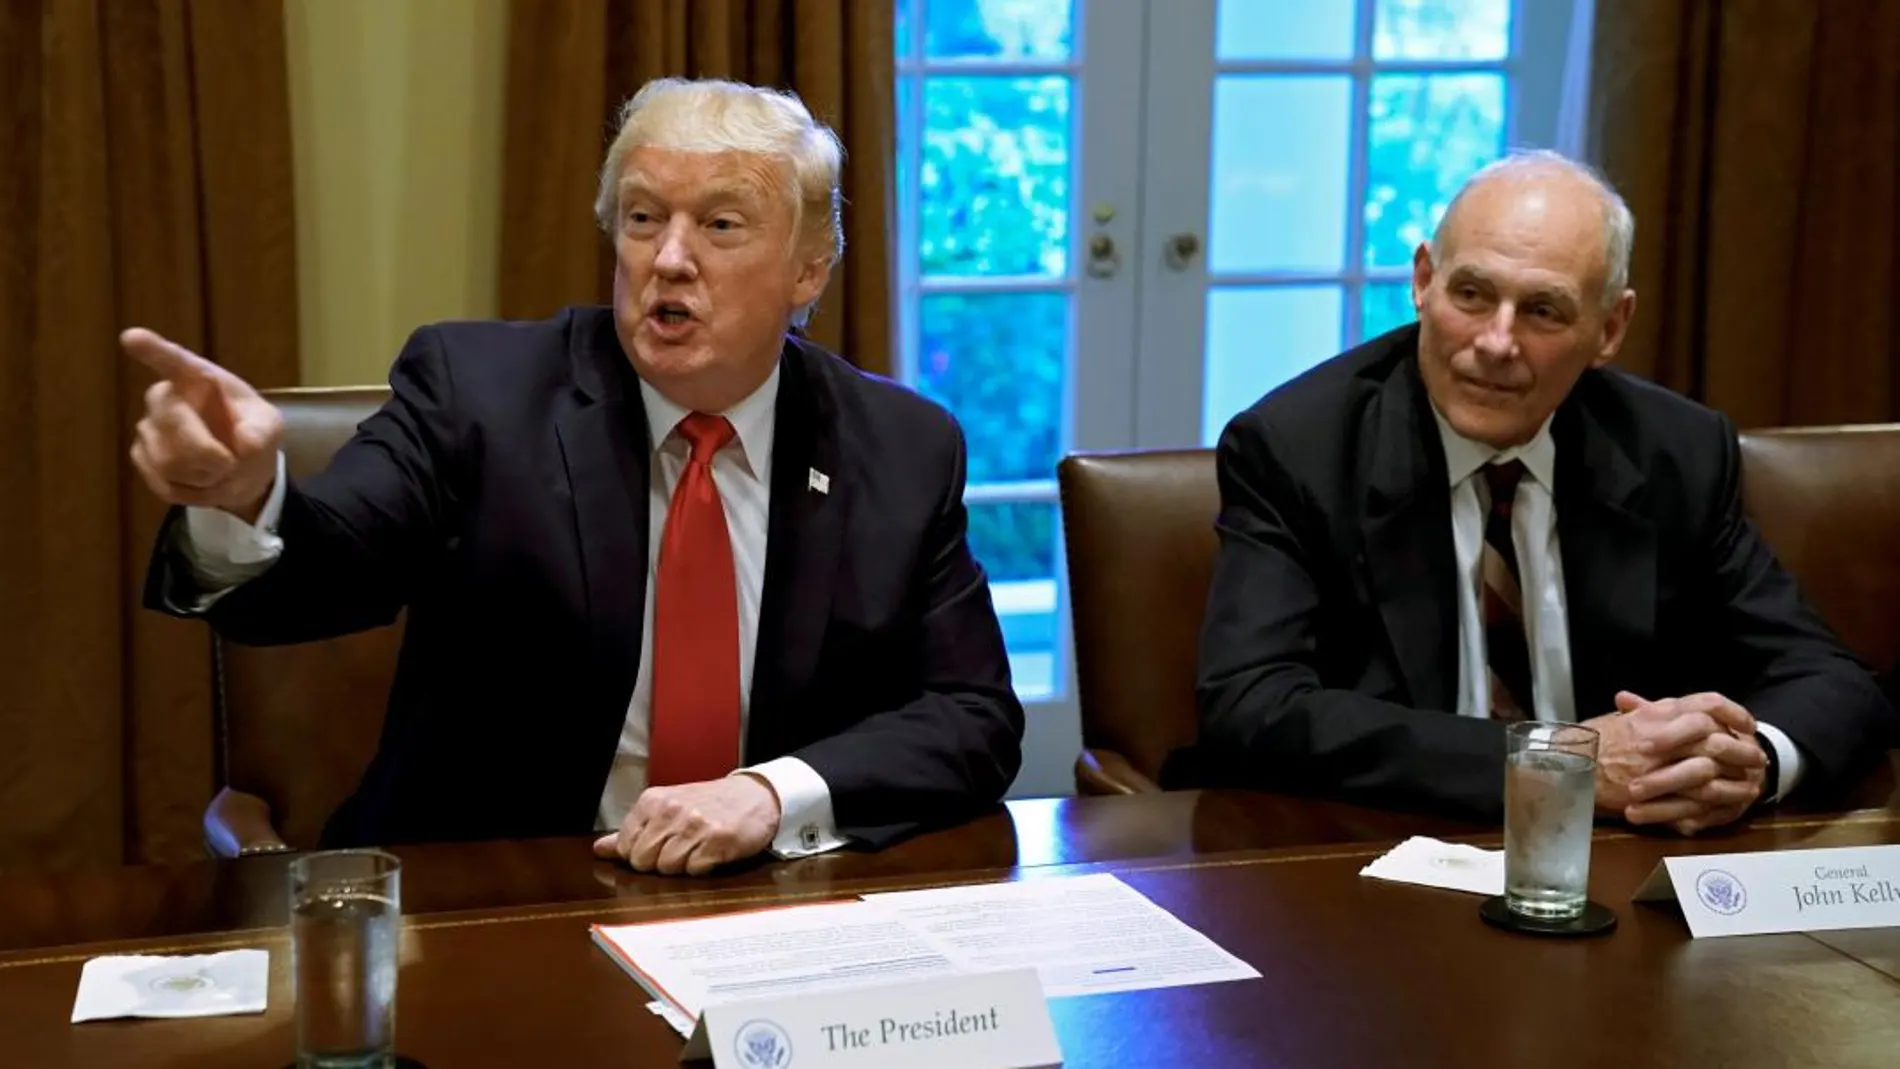 El presidente de Estados Unidos, Donald Trump, y el jefe de gabinete de la Casa Blanca, John Kelly